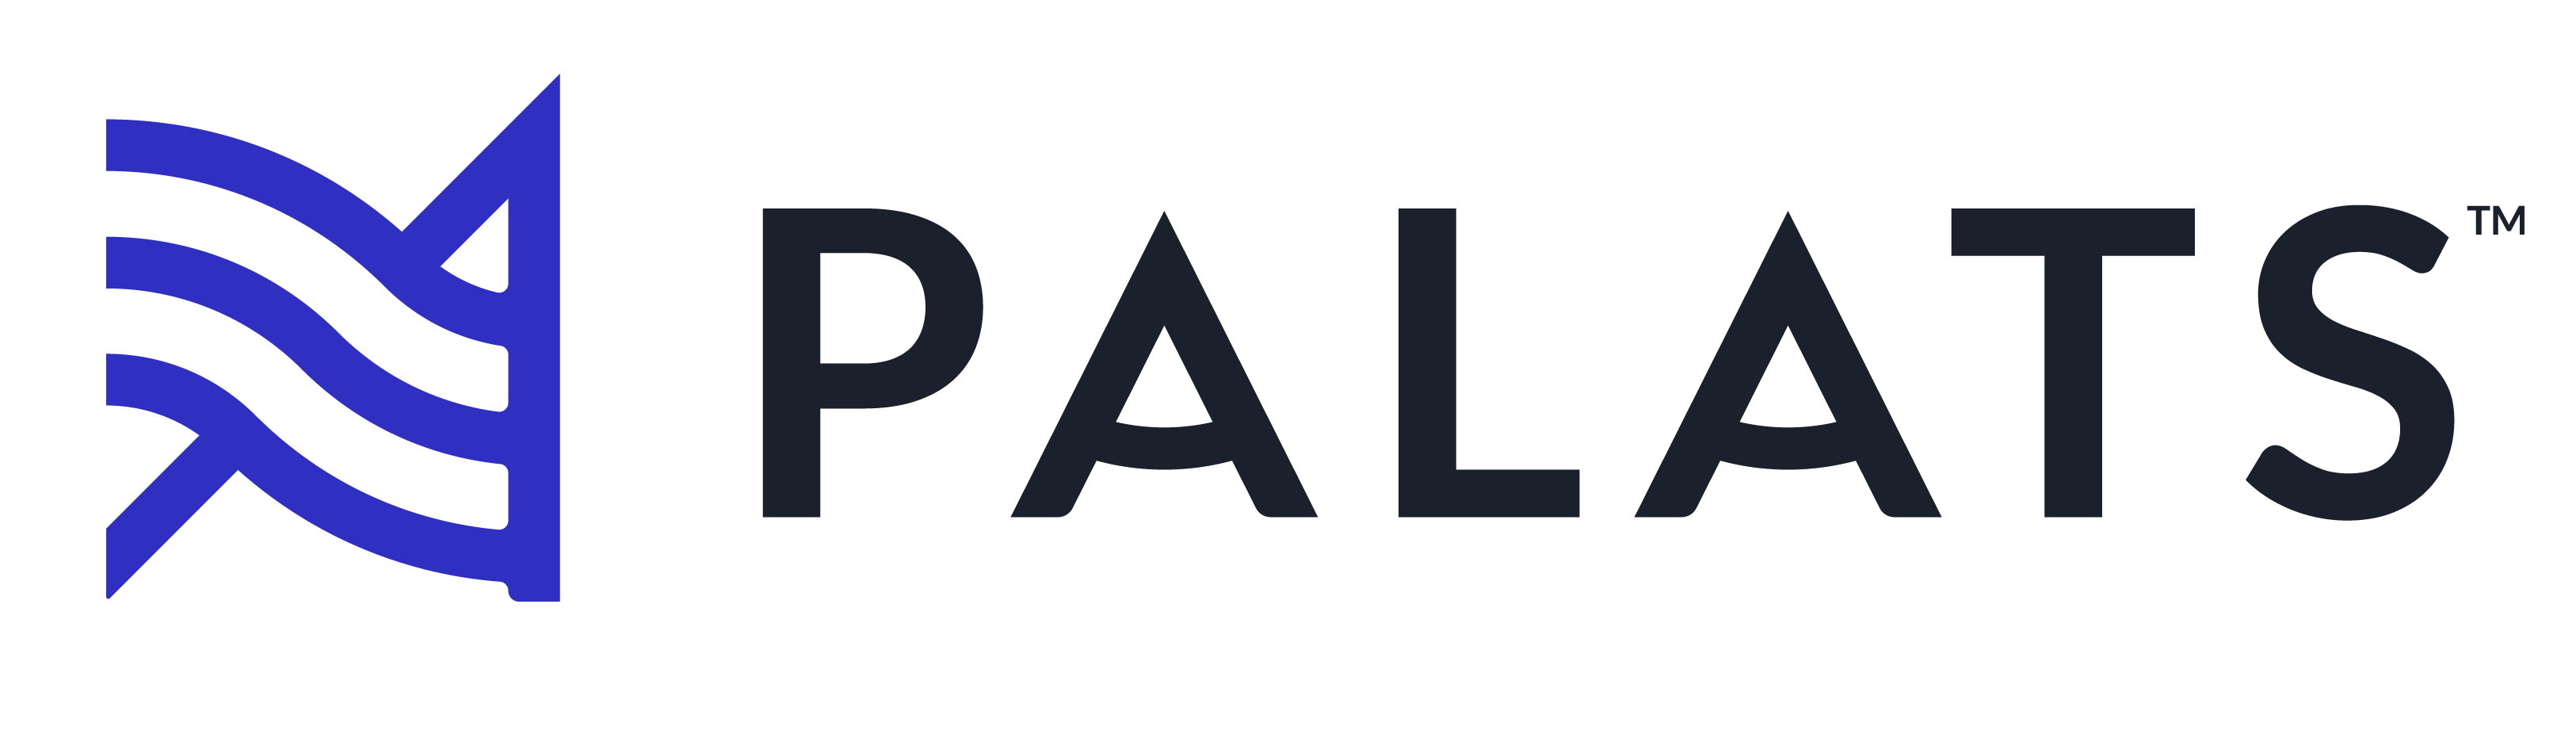 Palats Technology